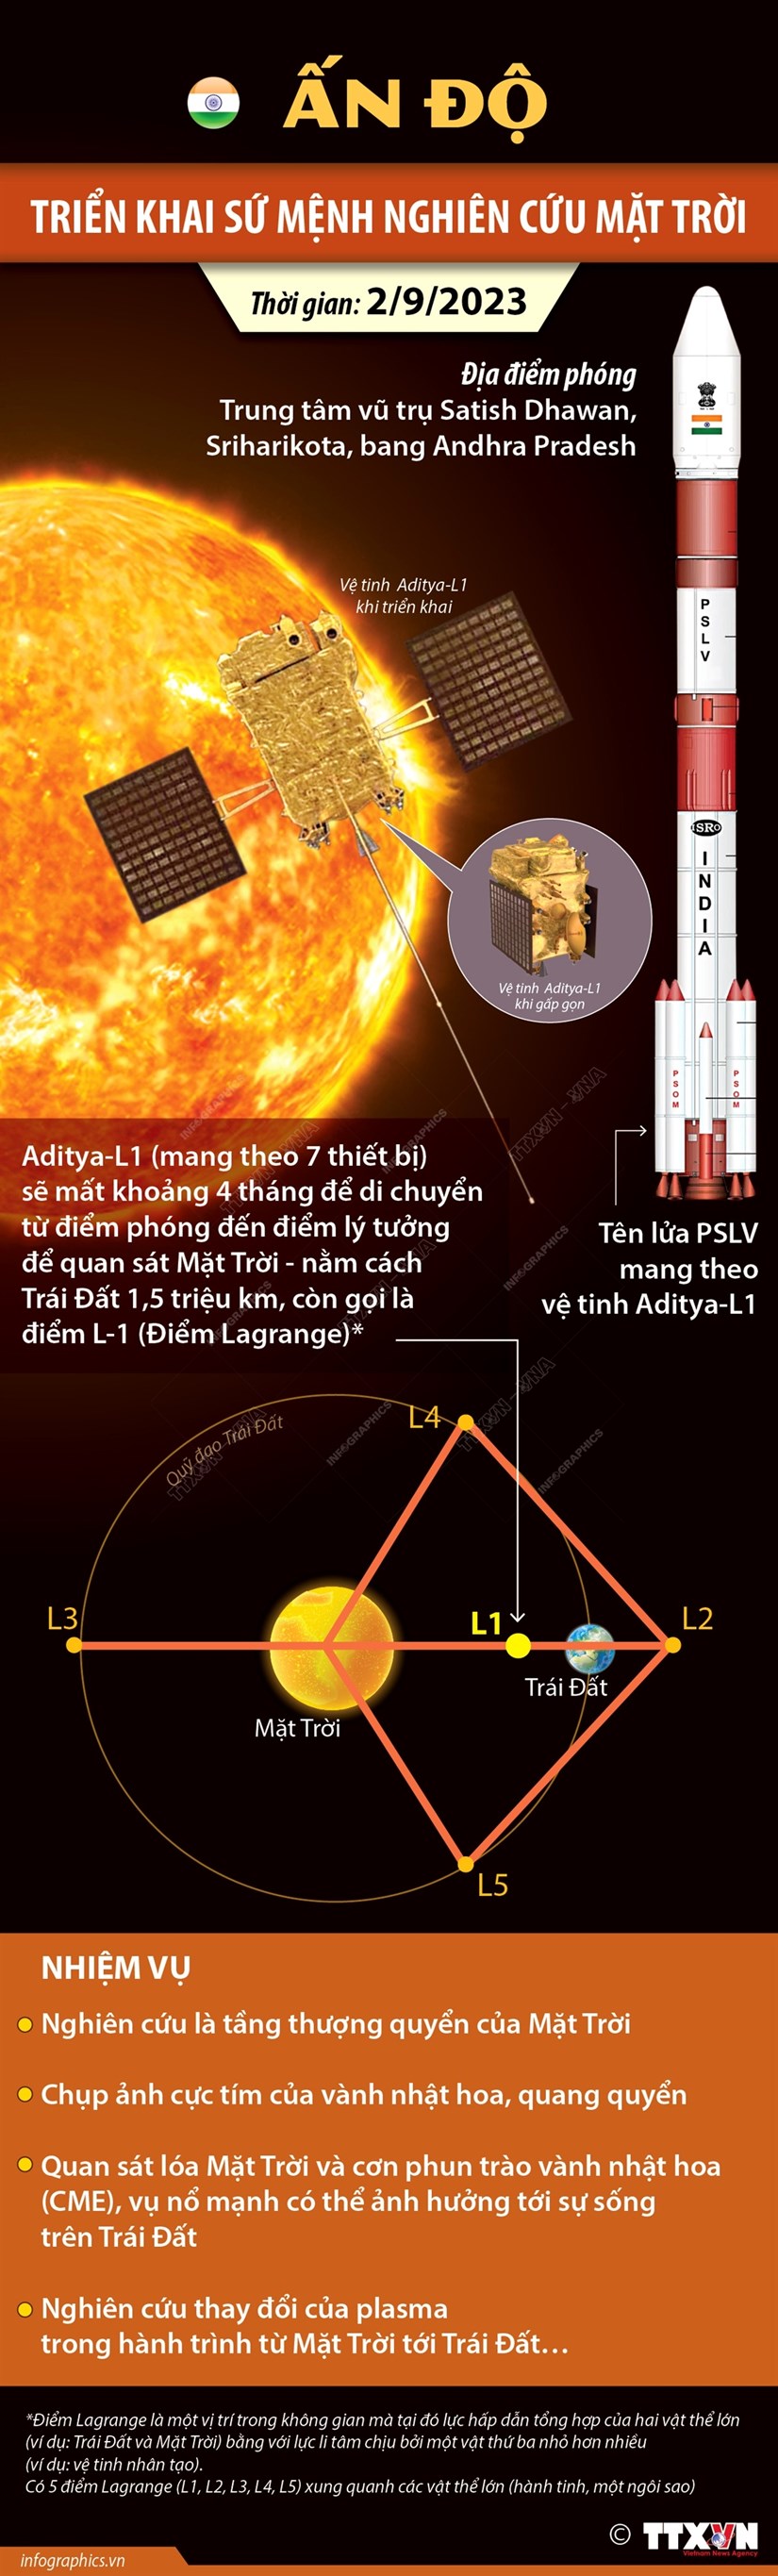 Ấn Độ triển khai sứ mệnh nghiên cứu Mặt Trời - ảnh 1